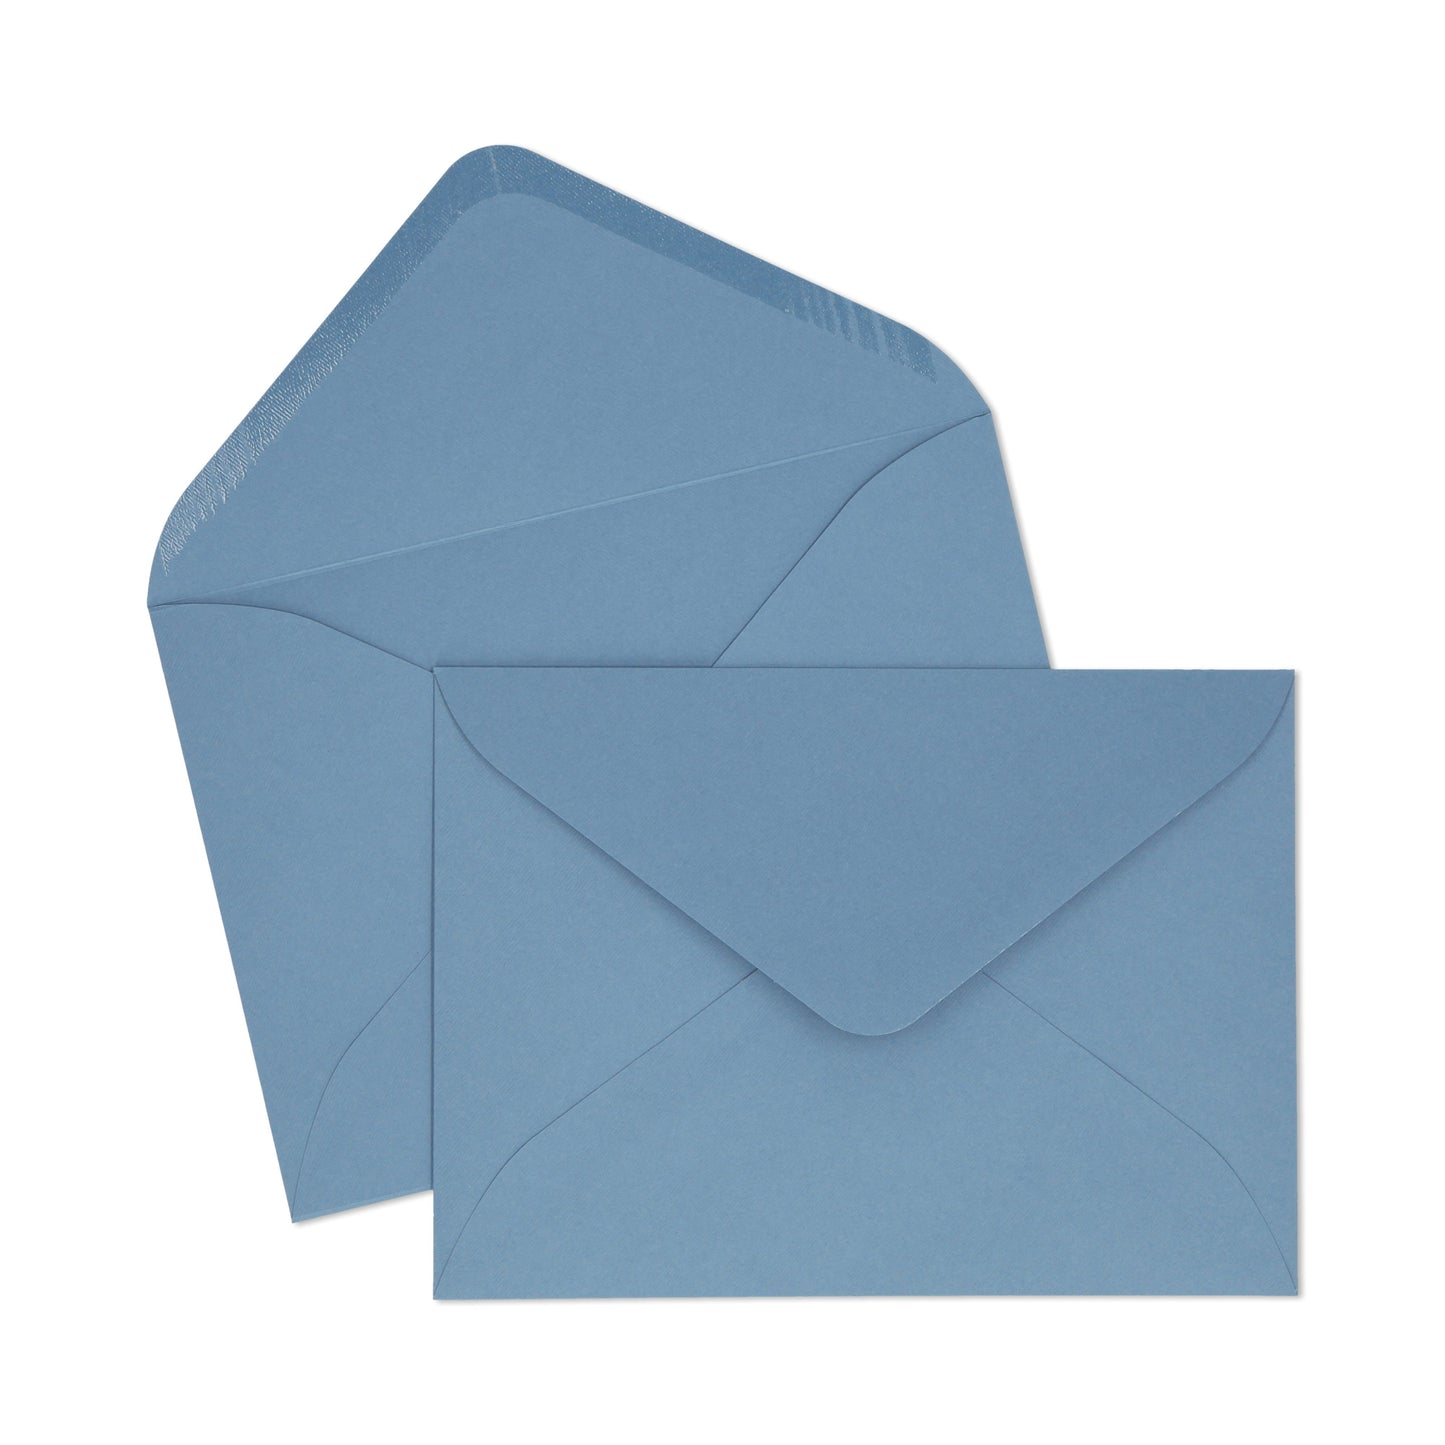 Dusty Blue C5 Envelope - 10 units